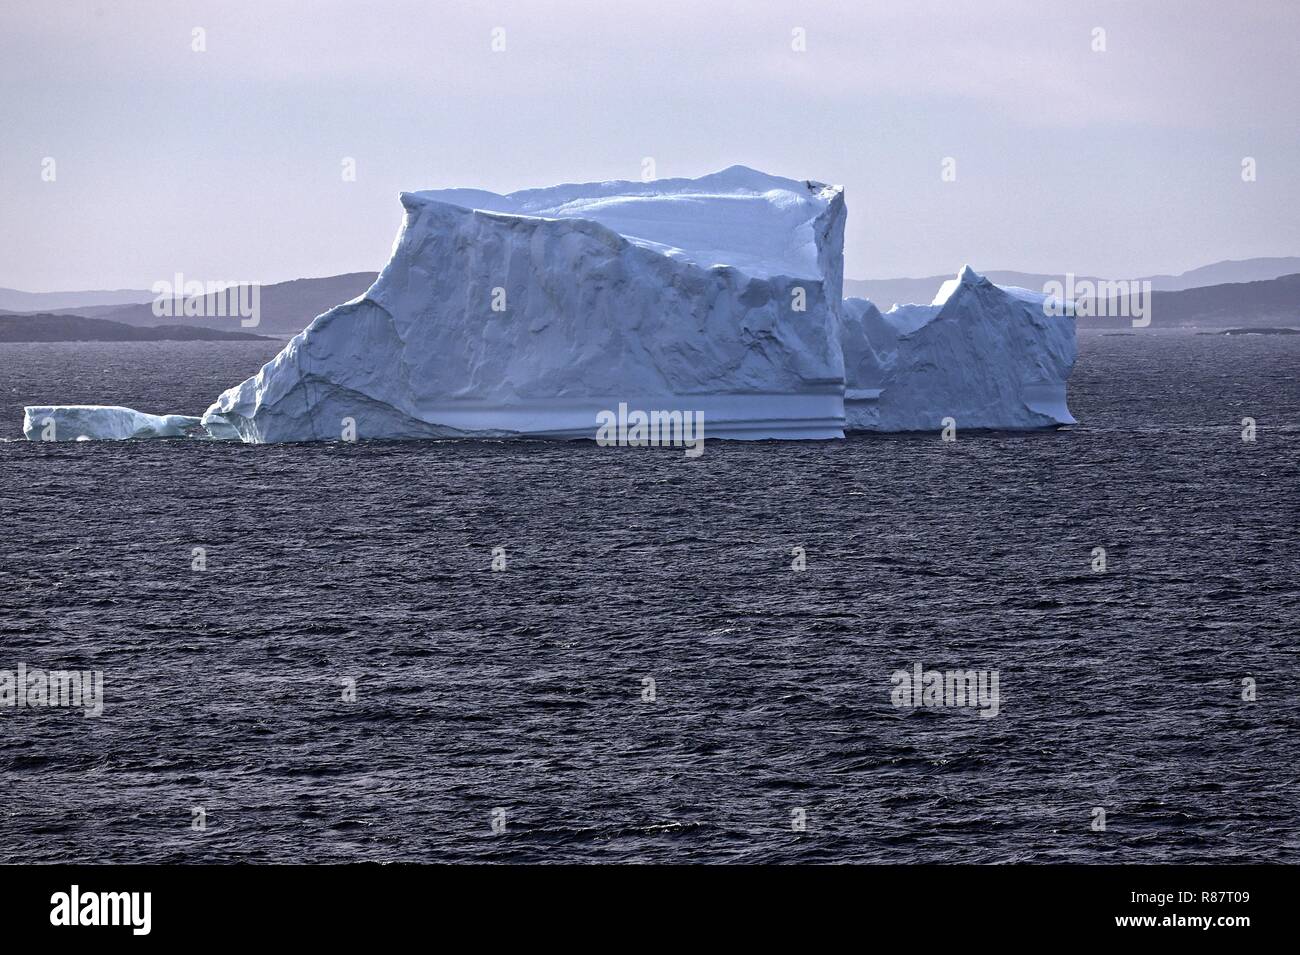 Grönland Diskobucht Vor der Küstenlinie hebt sich der sonnenbeschienene Eisberg prächtig ab Stock Photo